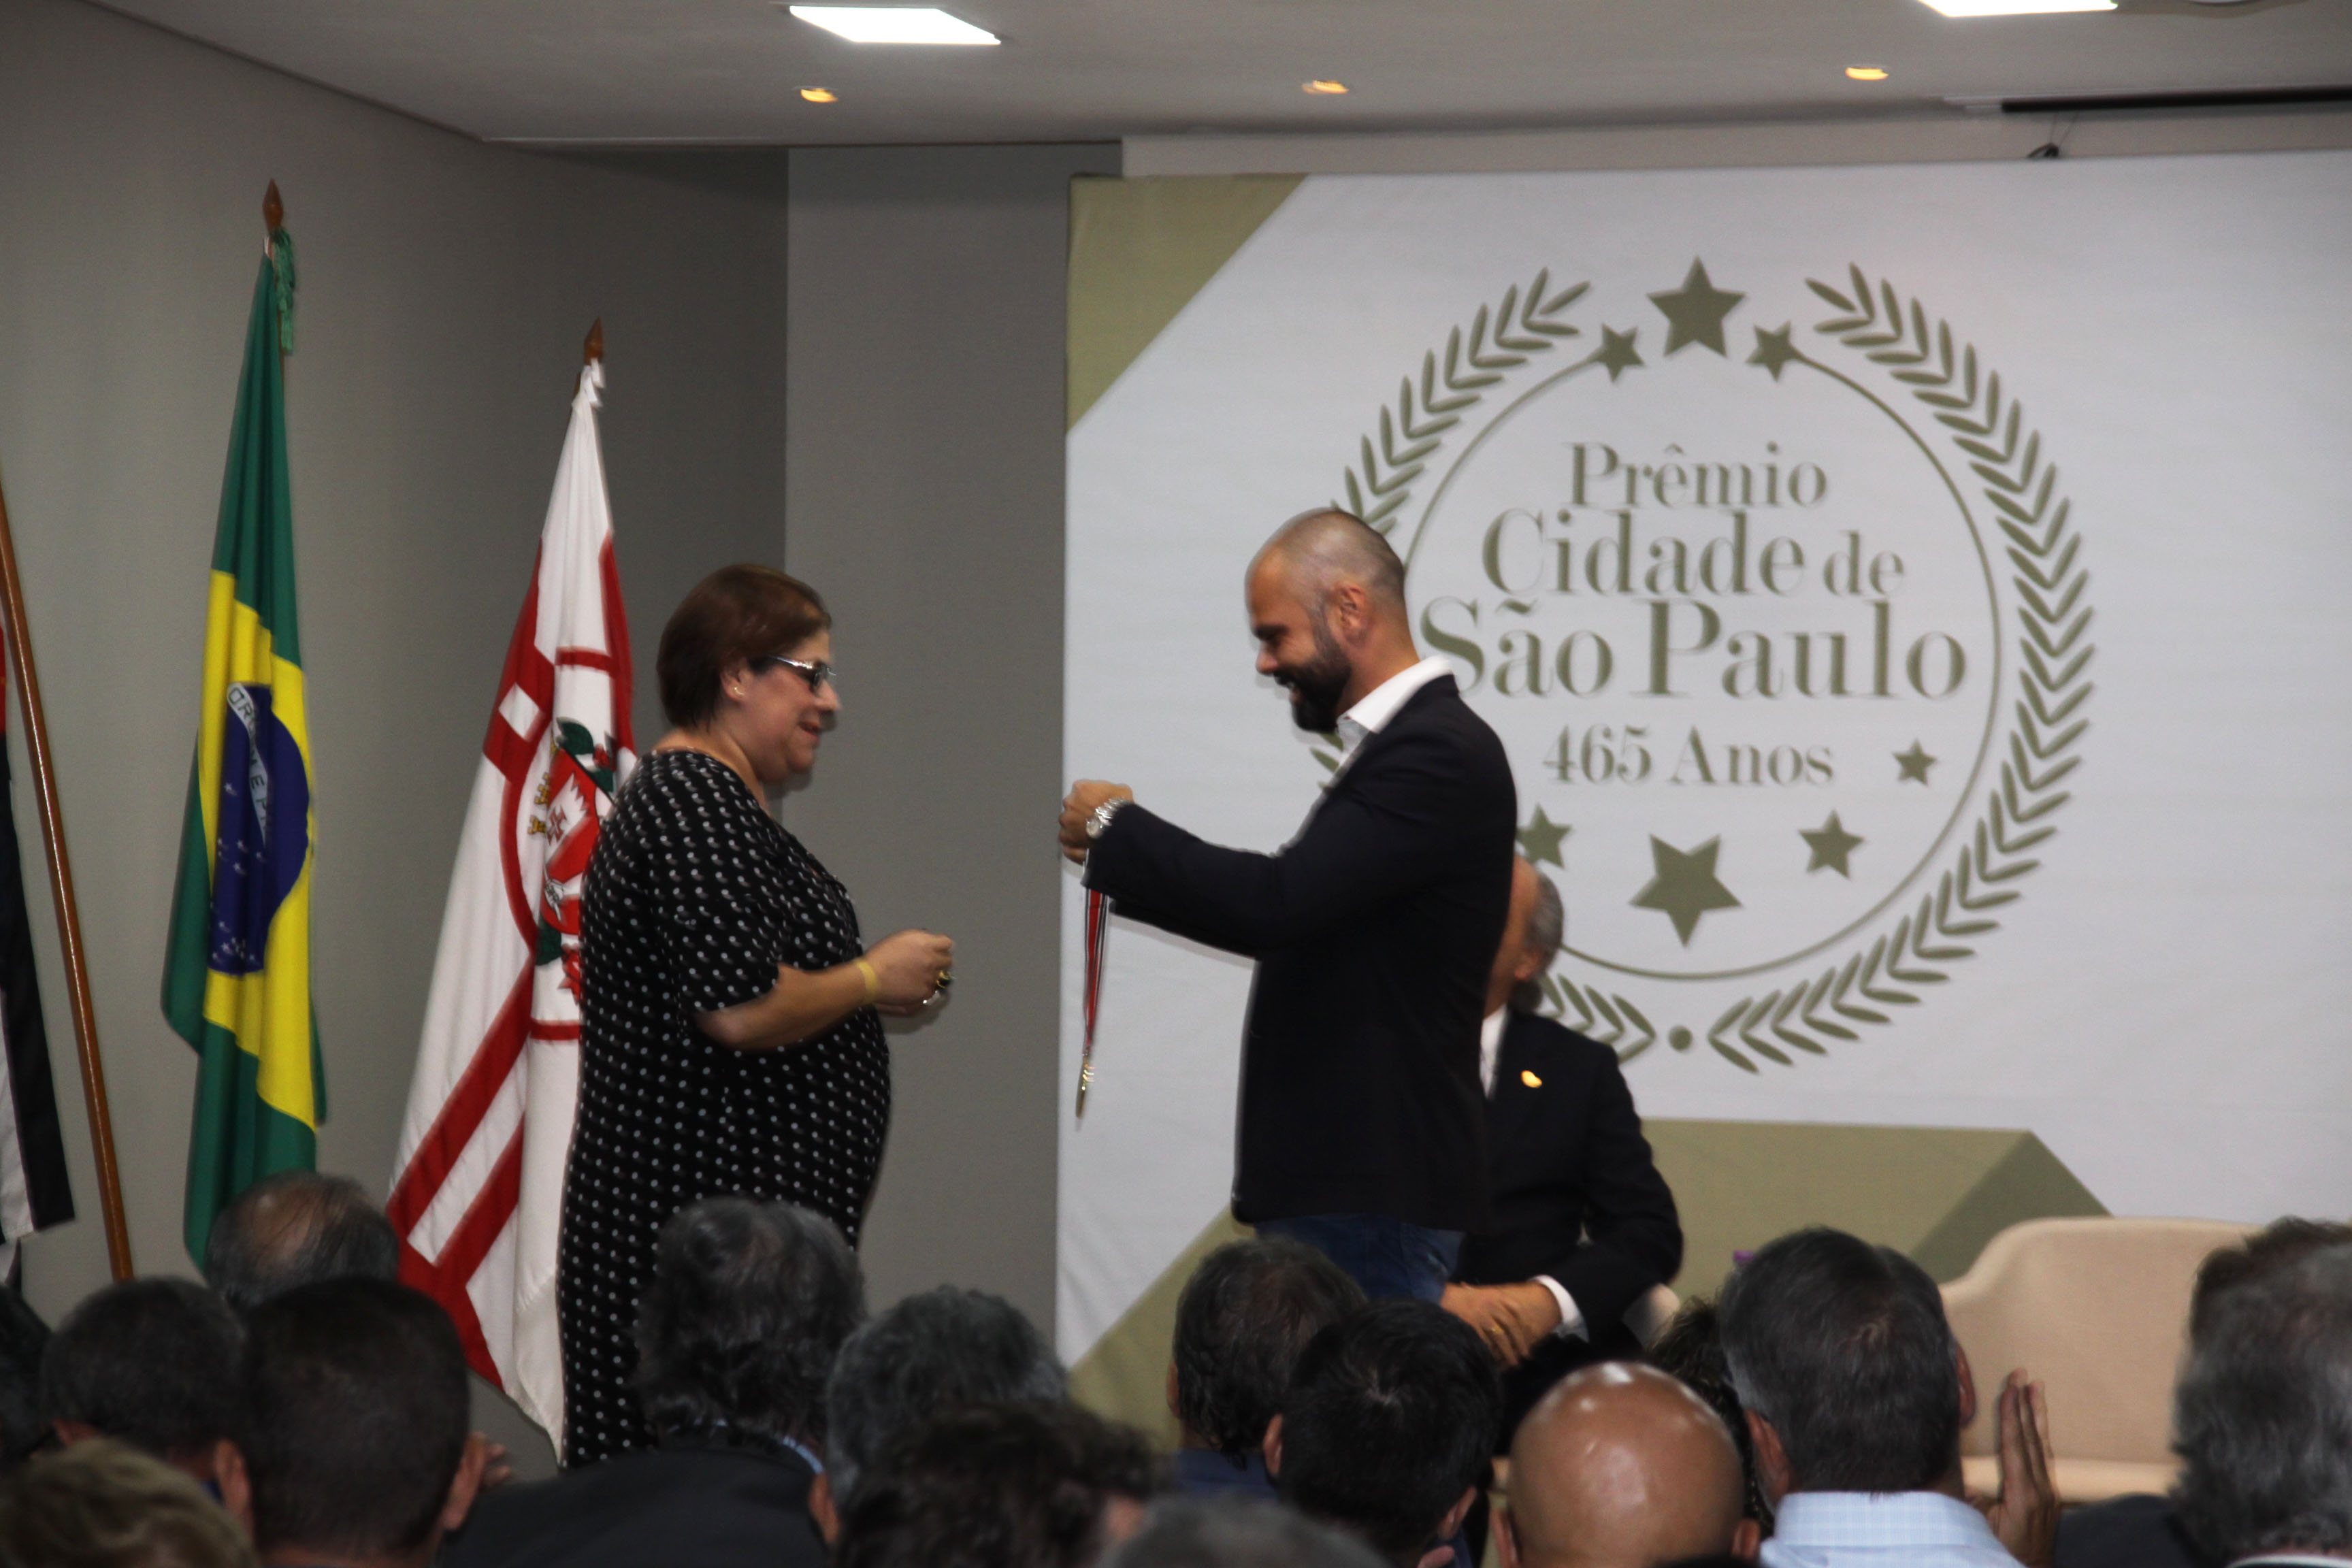 Coordenadora de Gestão SUAS no palco diante do prefeito Bruno Covas para receber de suas mãos a medalha do prêmio